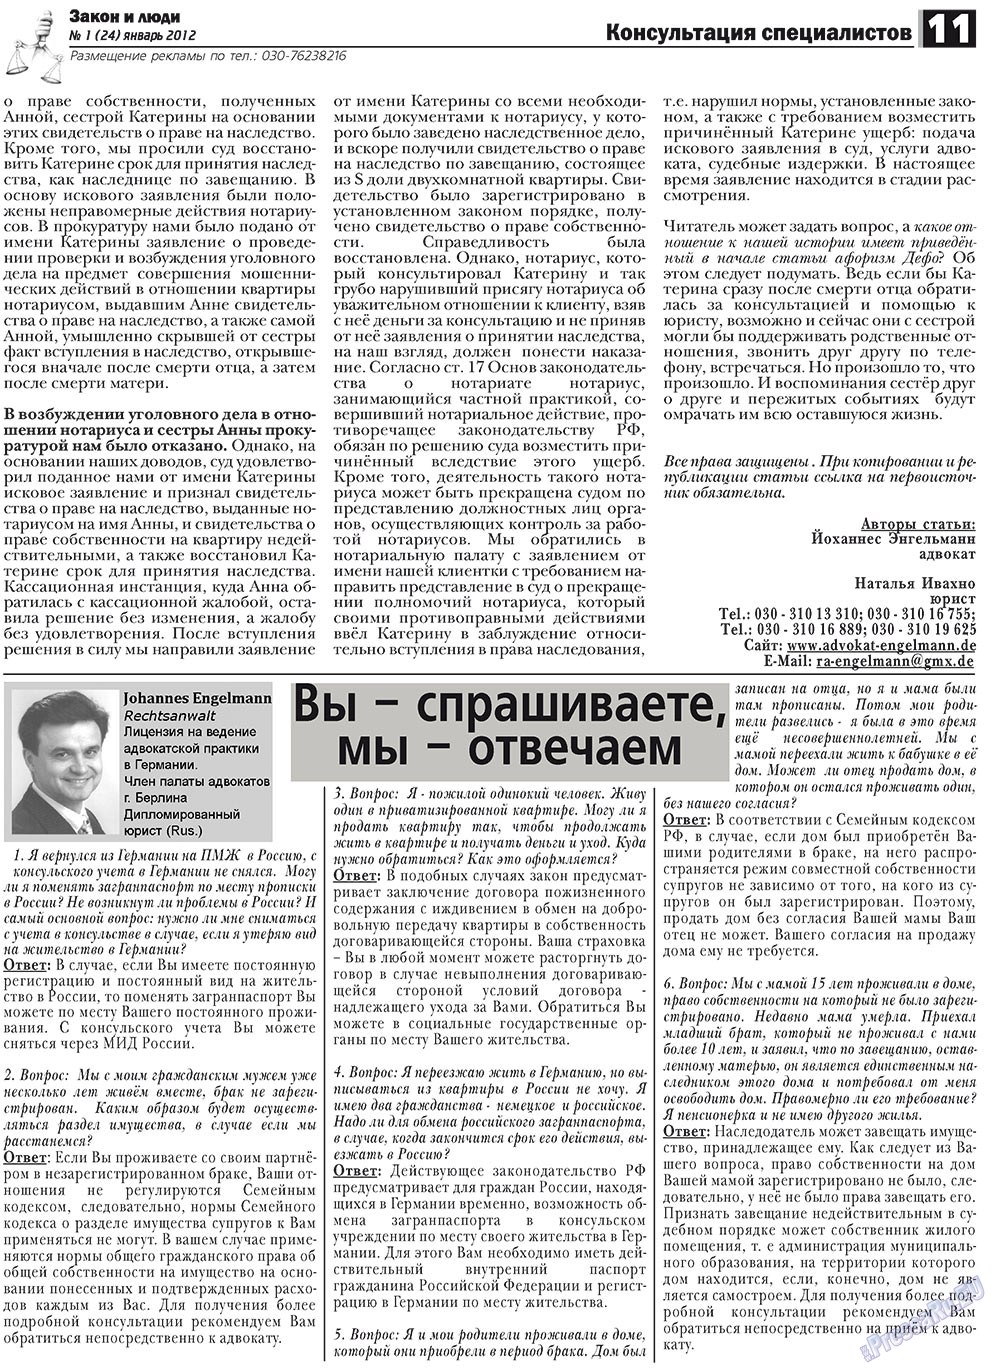 Закон и люди, газета. 2012 №1 стр.11